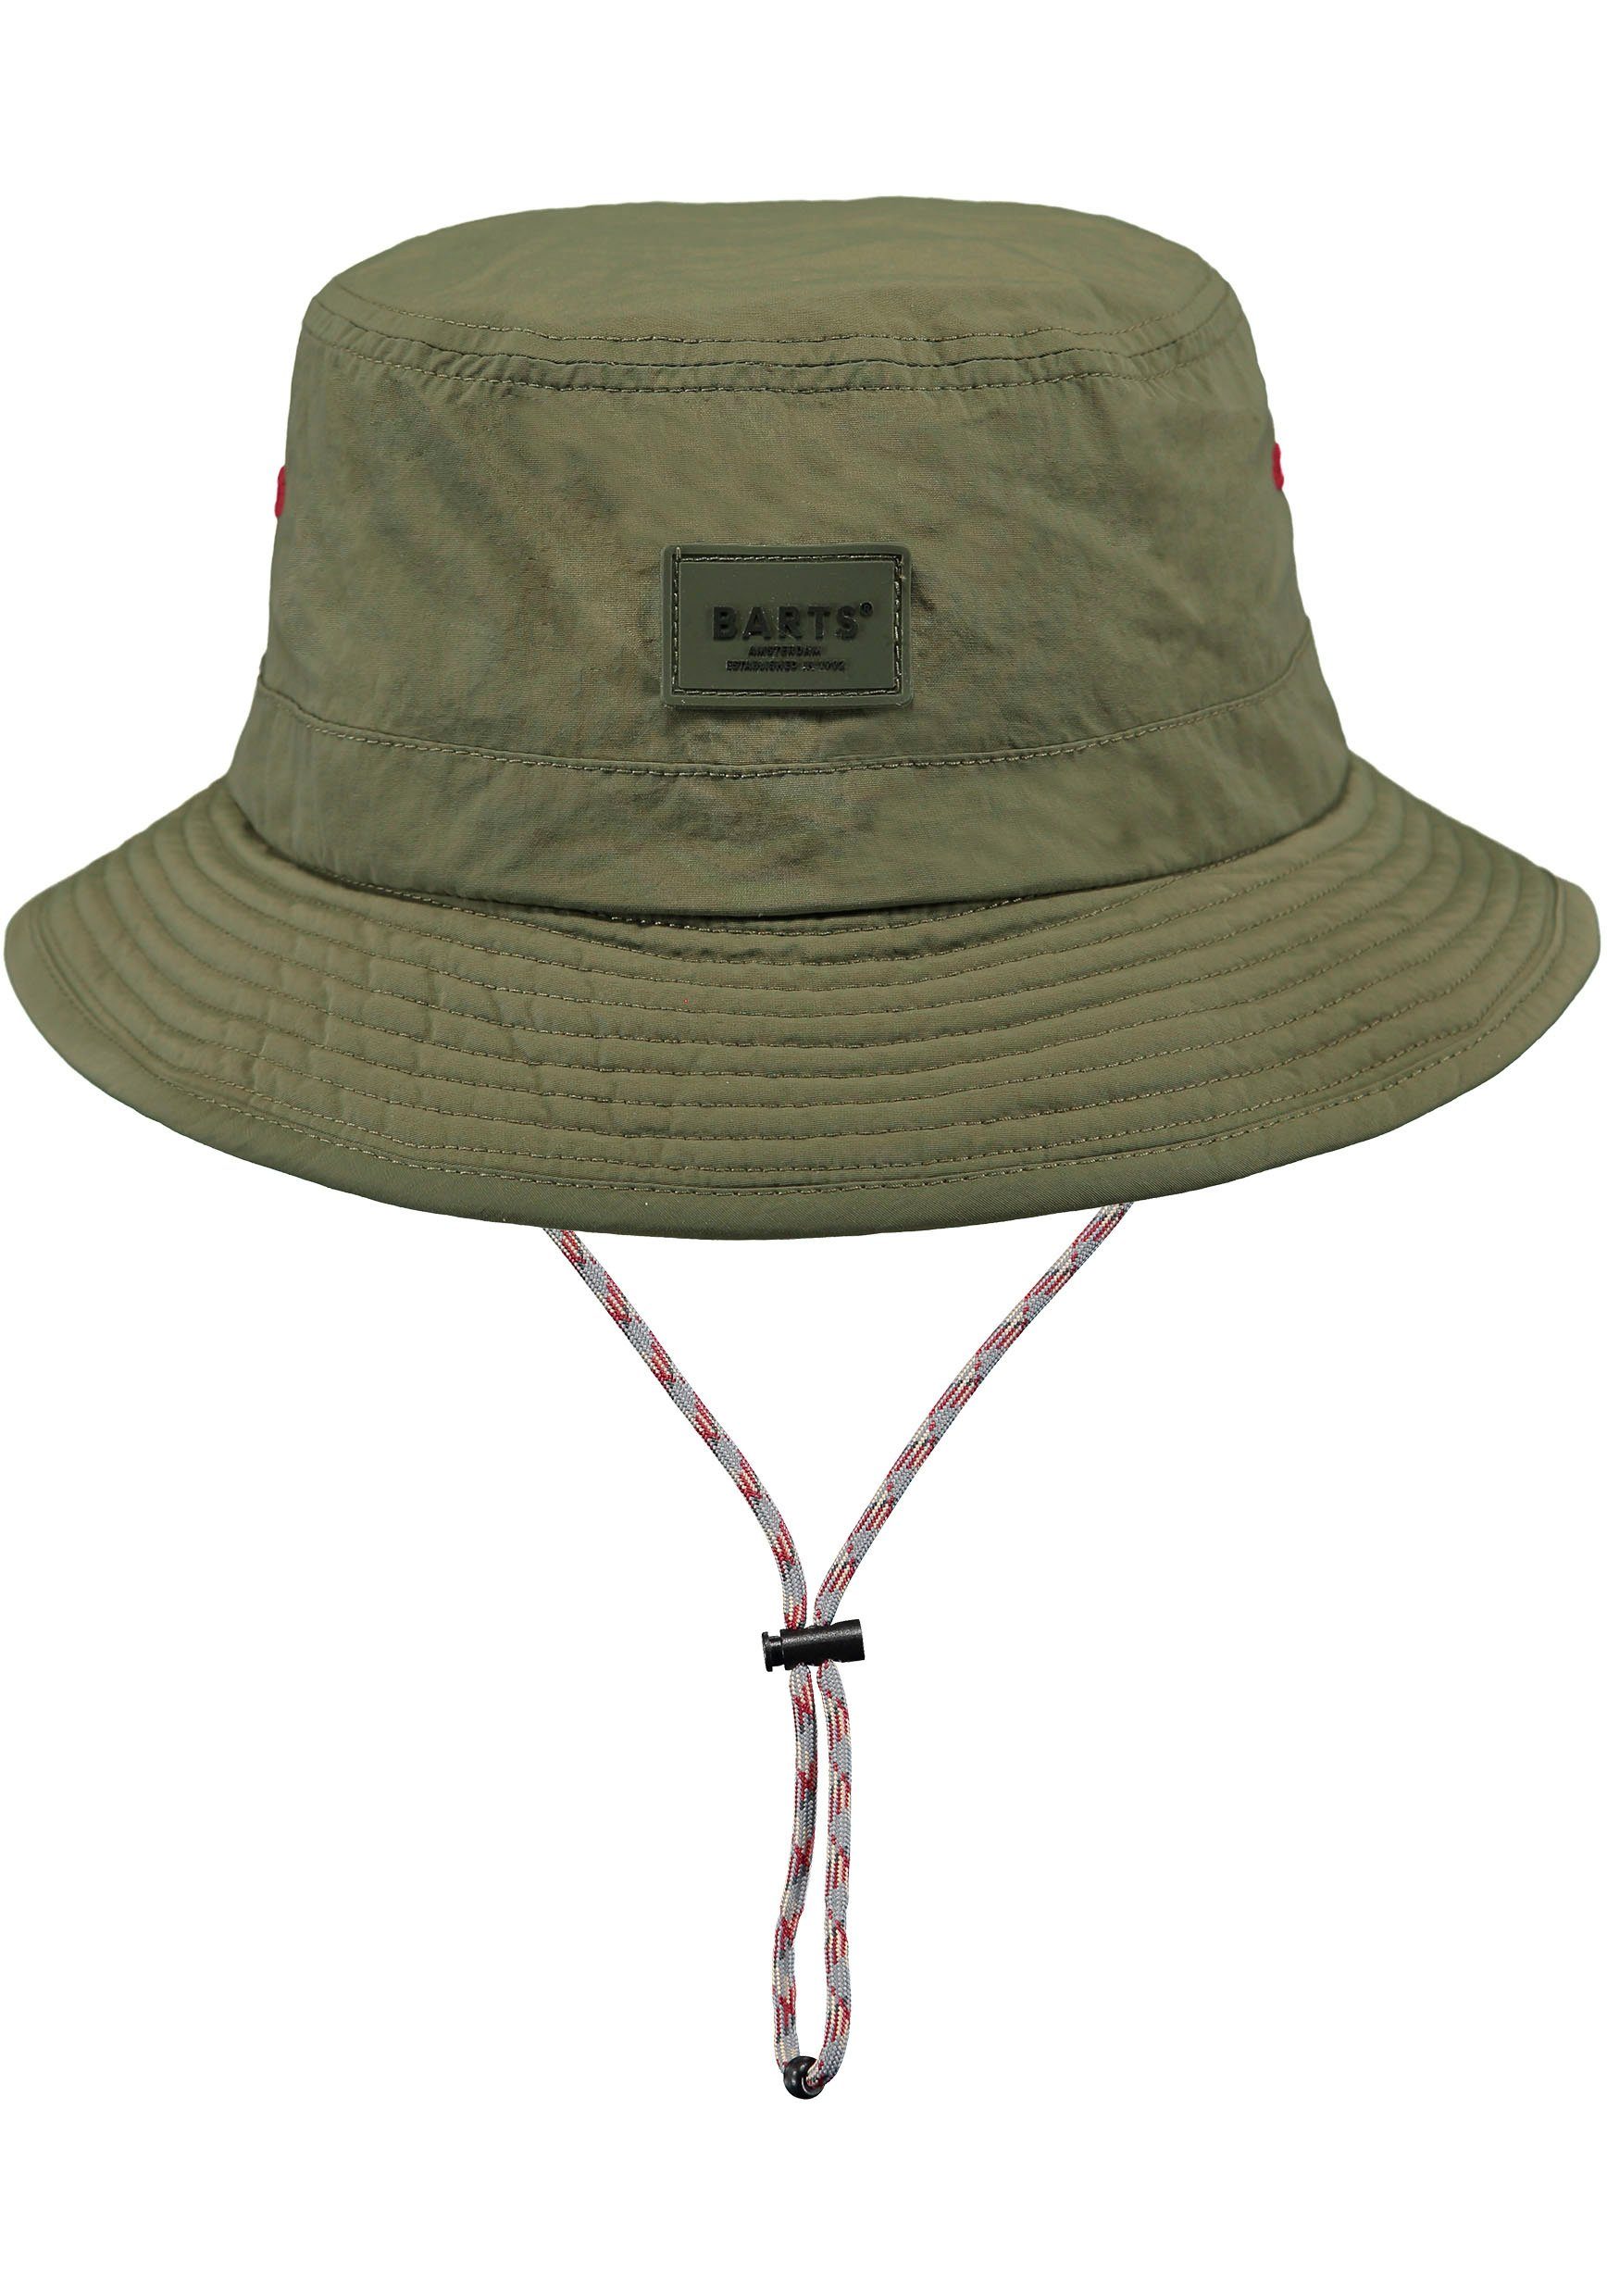 verstellbare Bindeband, innenliegendes Hutband olivgrün Passform Barts Fischerhut mit durch